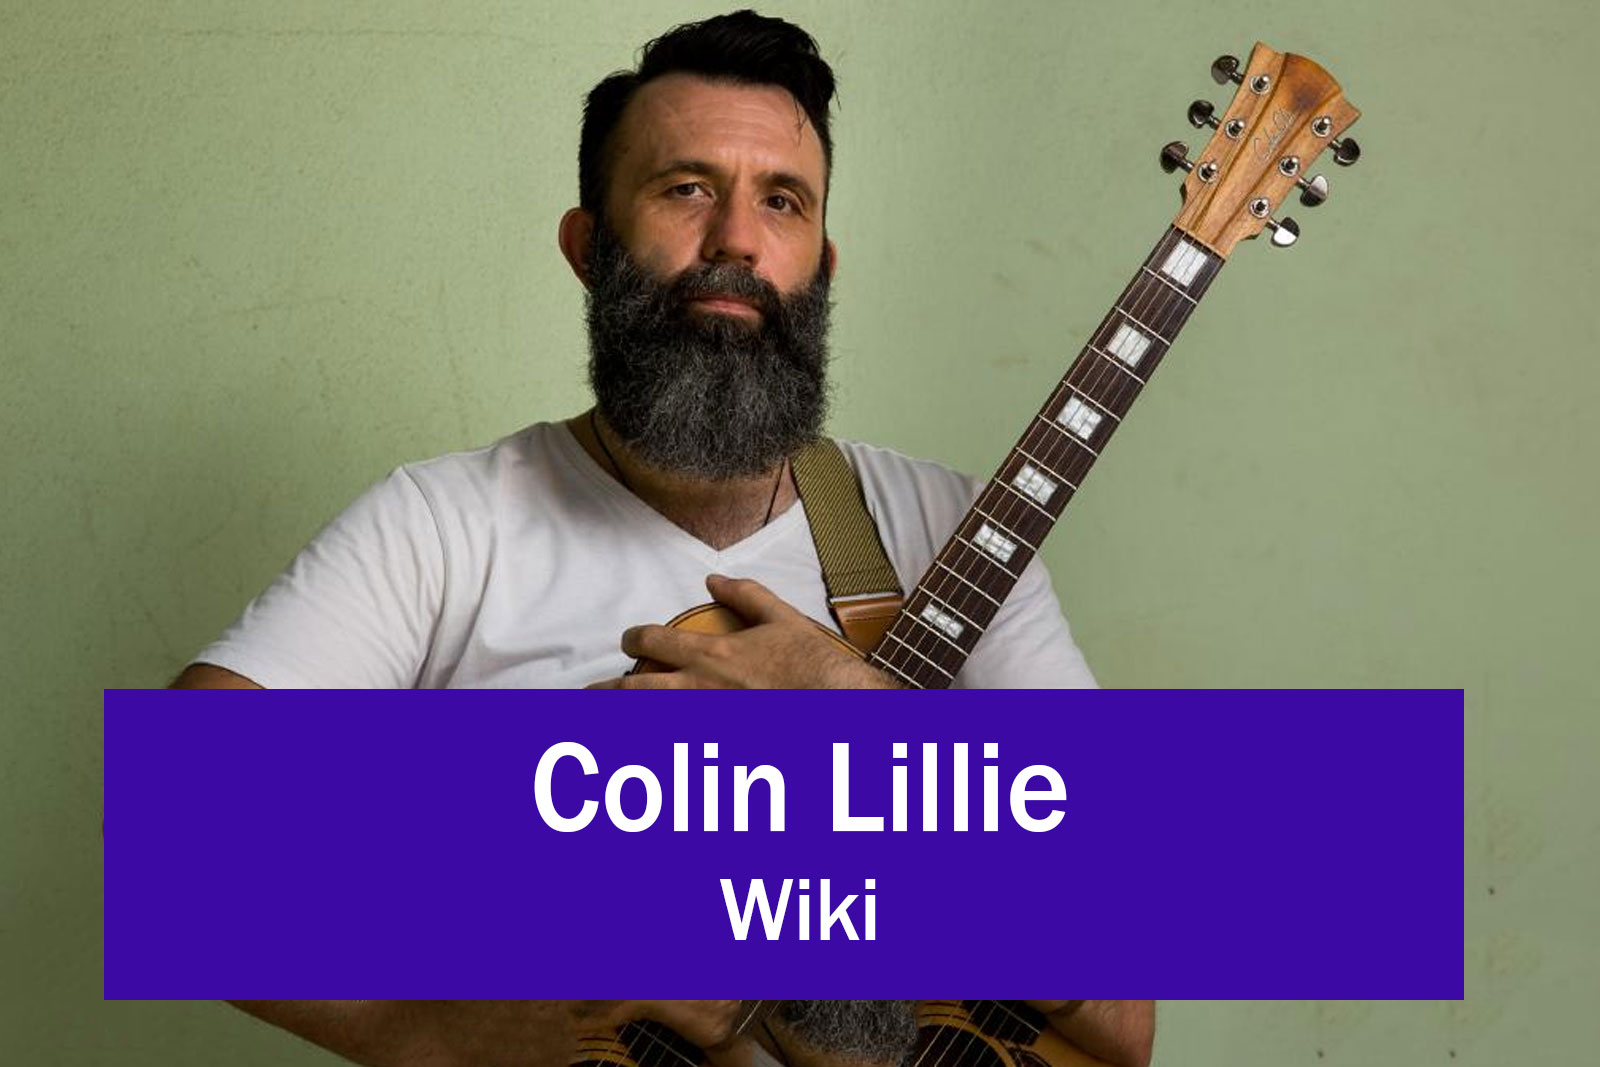 Colin Lillie Wikipedia